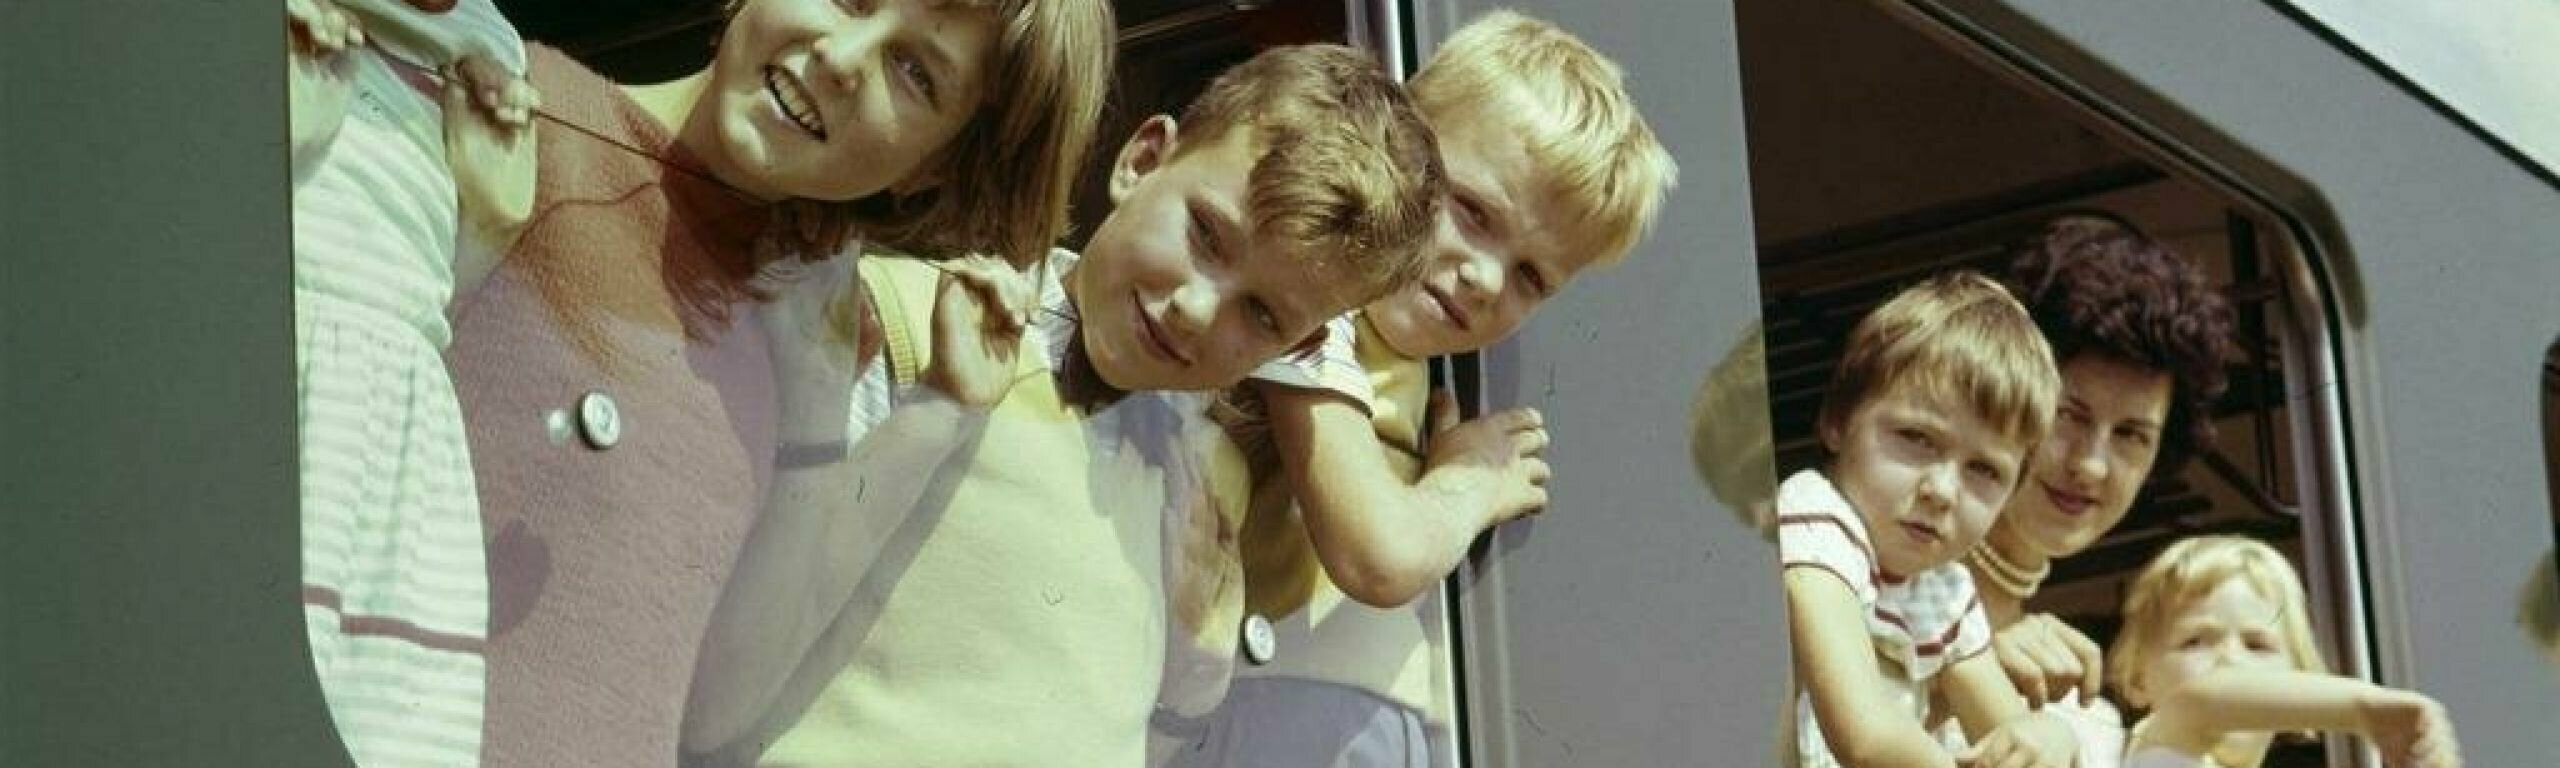 Kinder schauen aus einem Zugfenster